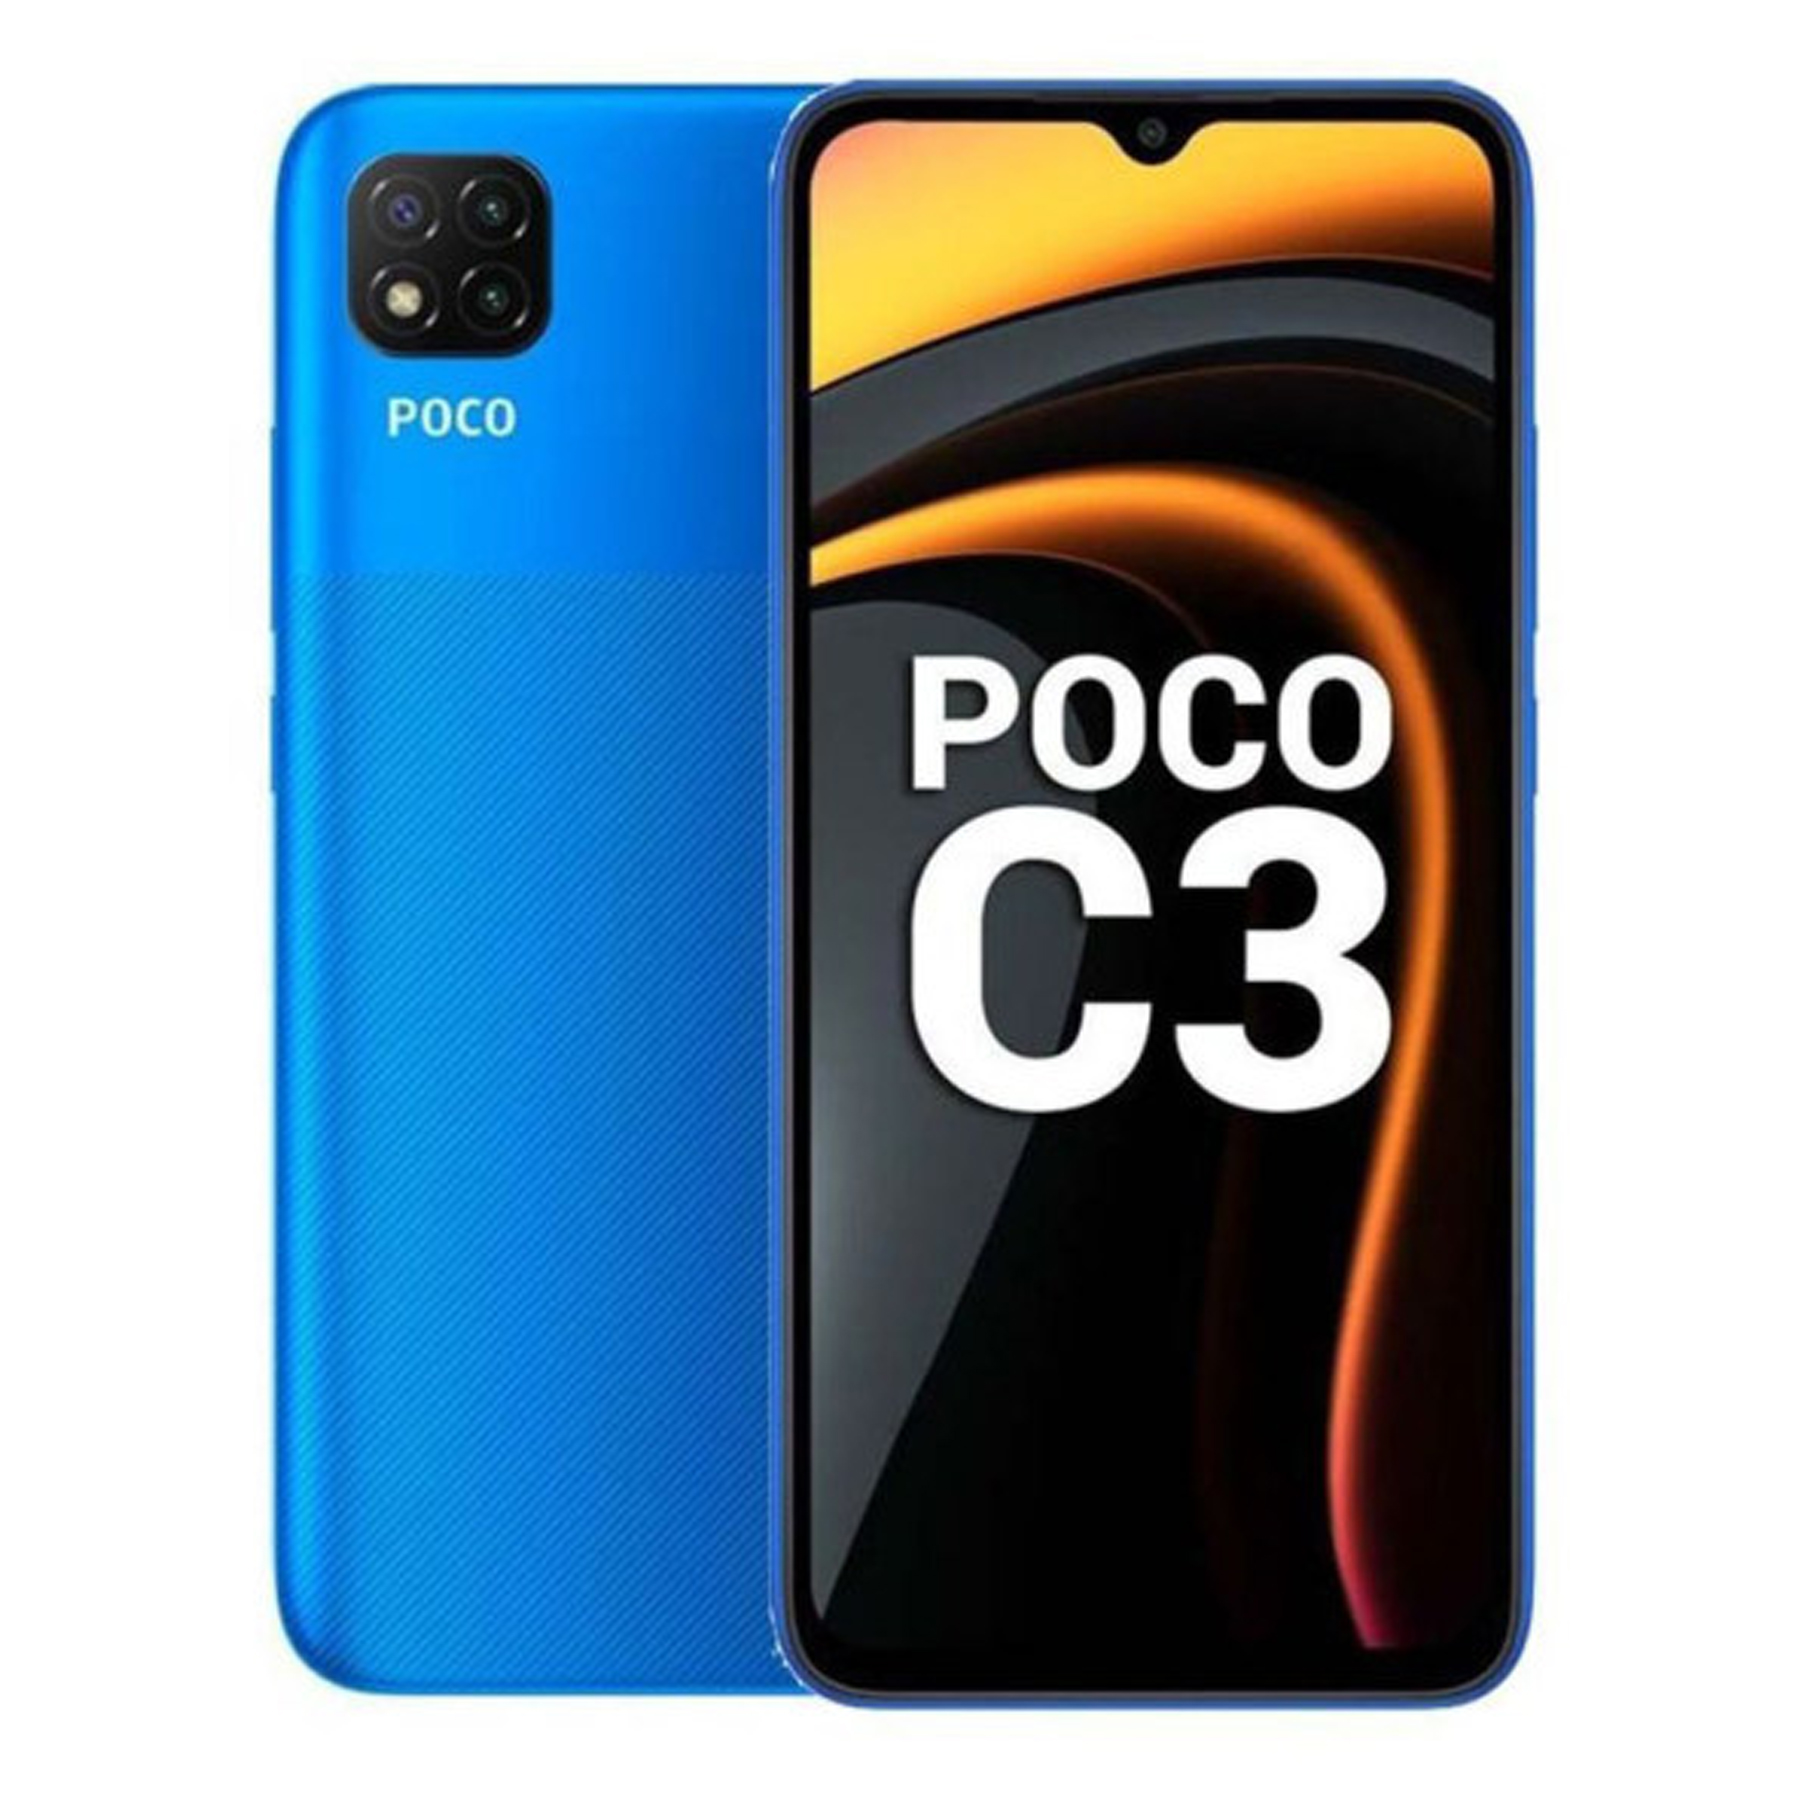 نقد و بررسی گوشی موبایل شیایومی مدل POCO C3 M2006C3MI دو سیم کارت ظرفیت 64 گیگابایت و رم 4 گیگابایت توسط خریداران